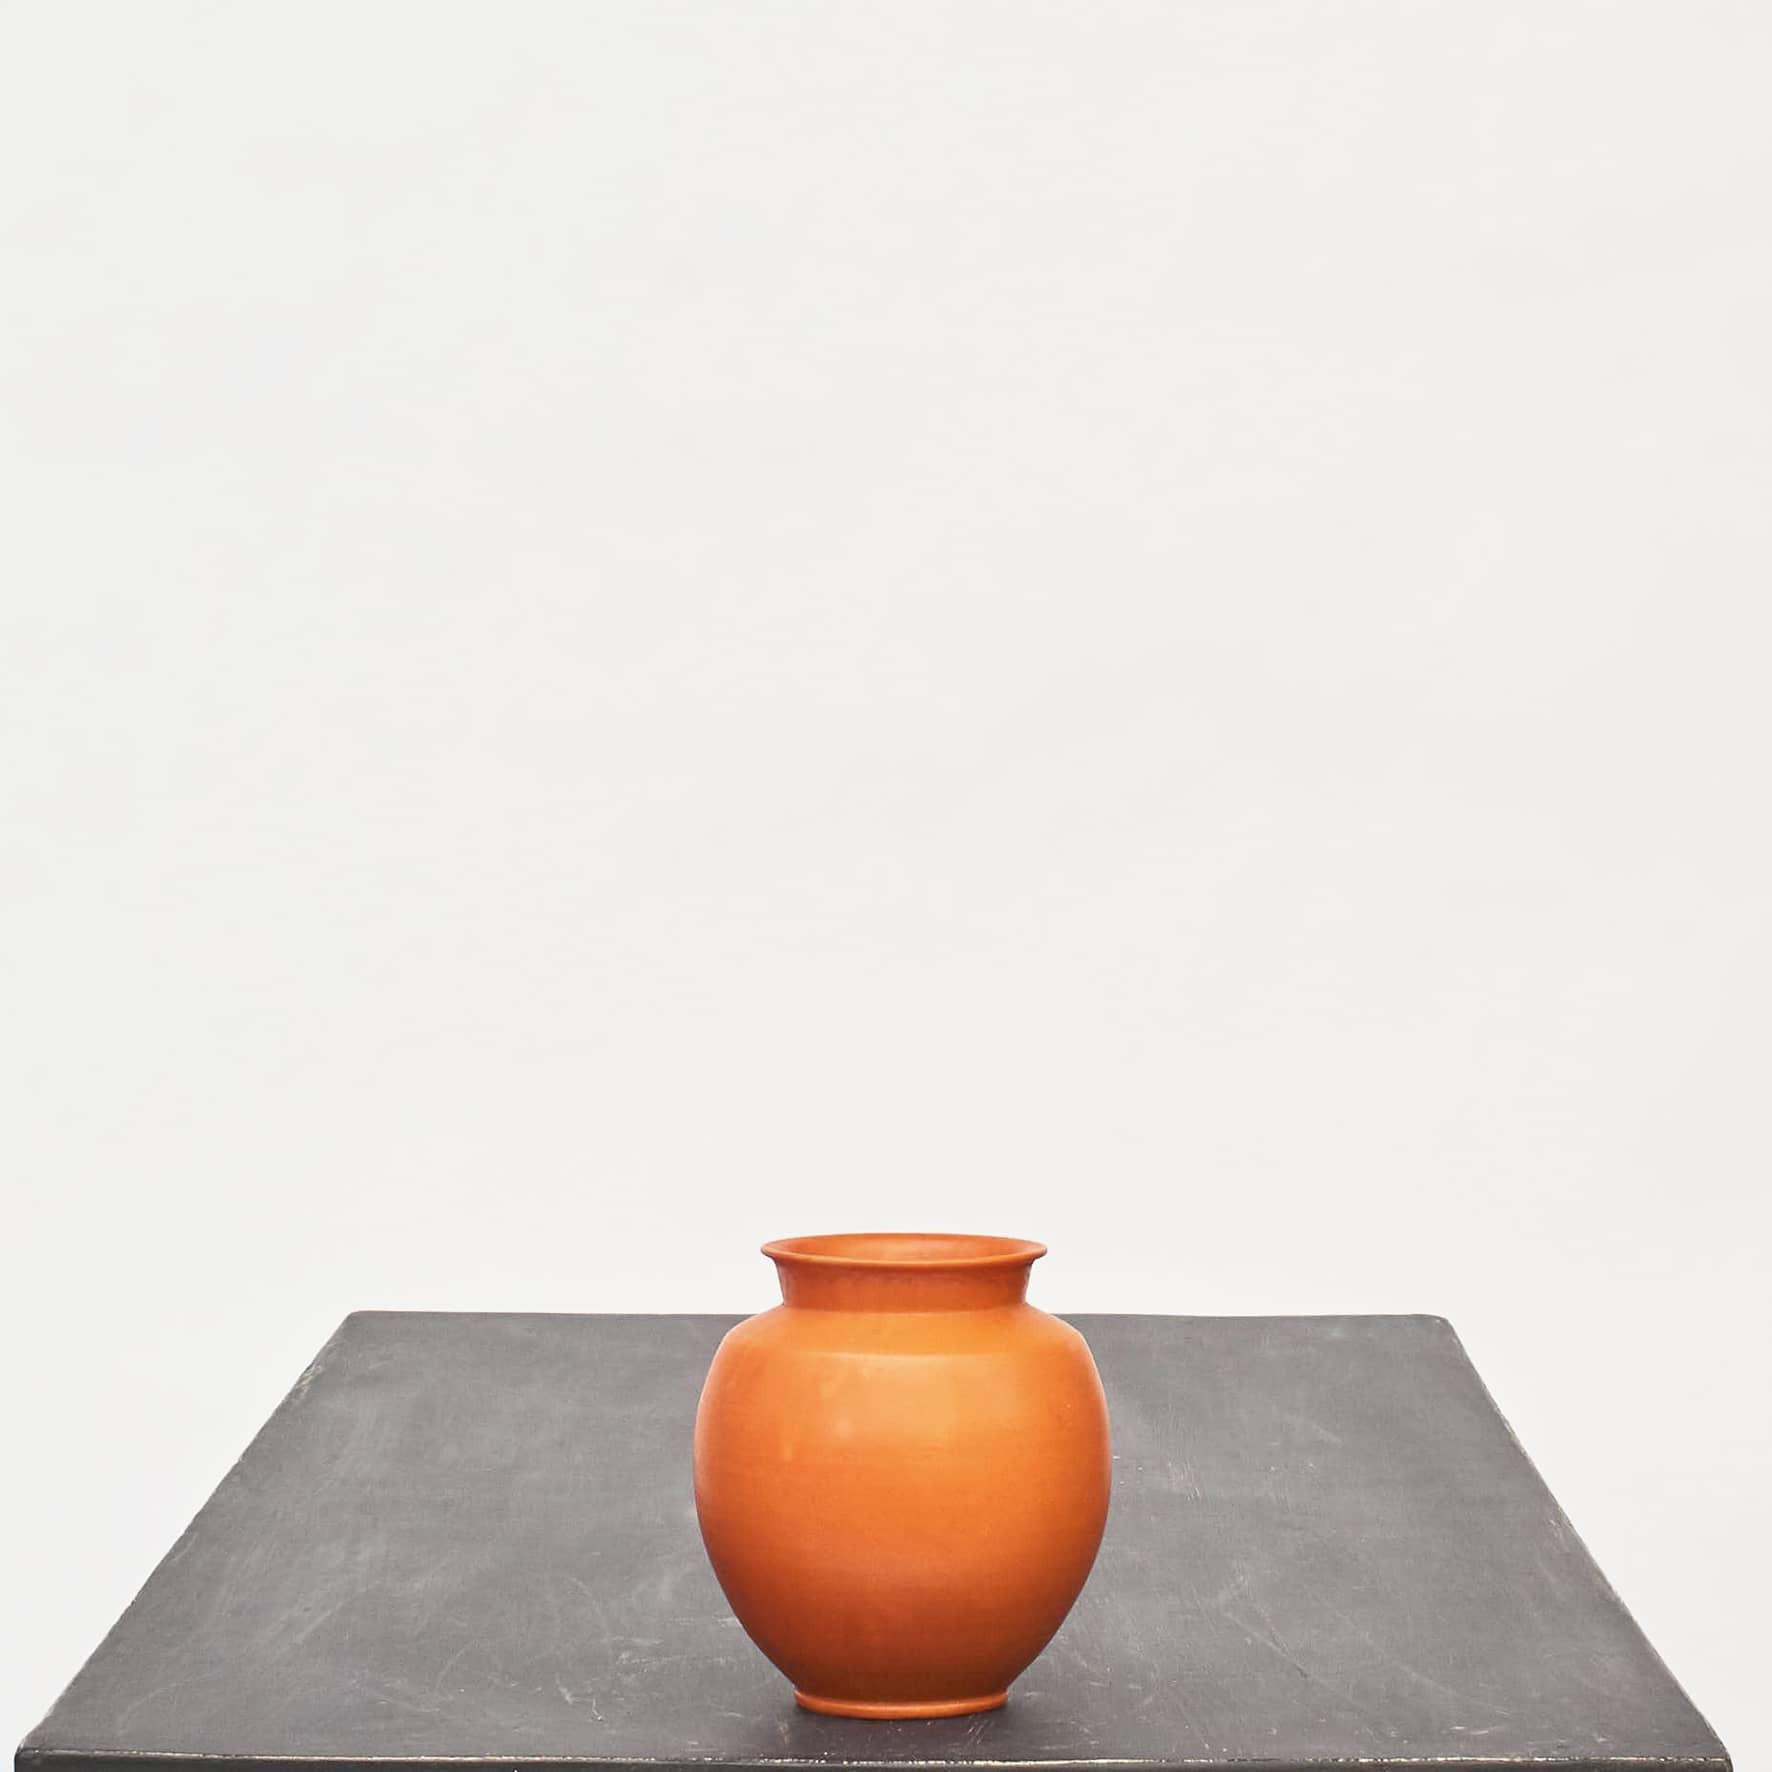 Vase en céramique Kähler avec glaçure orange.
Signé 